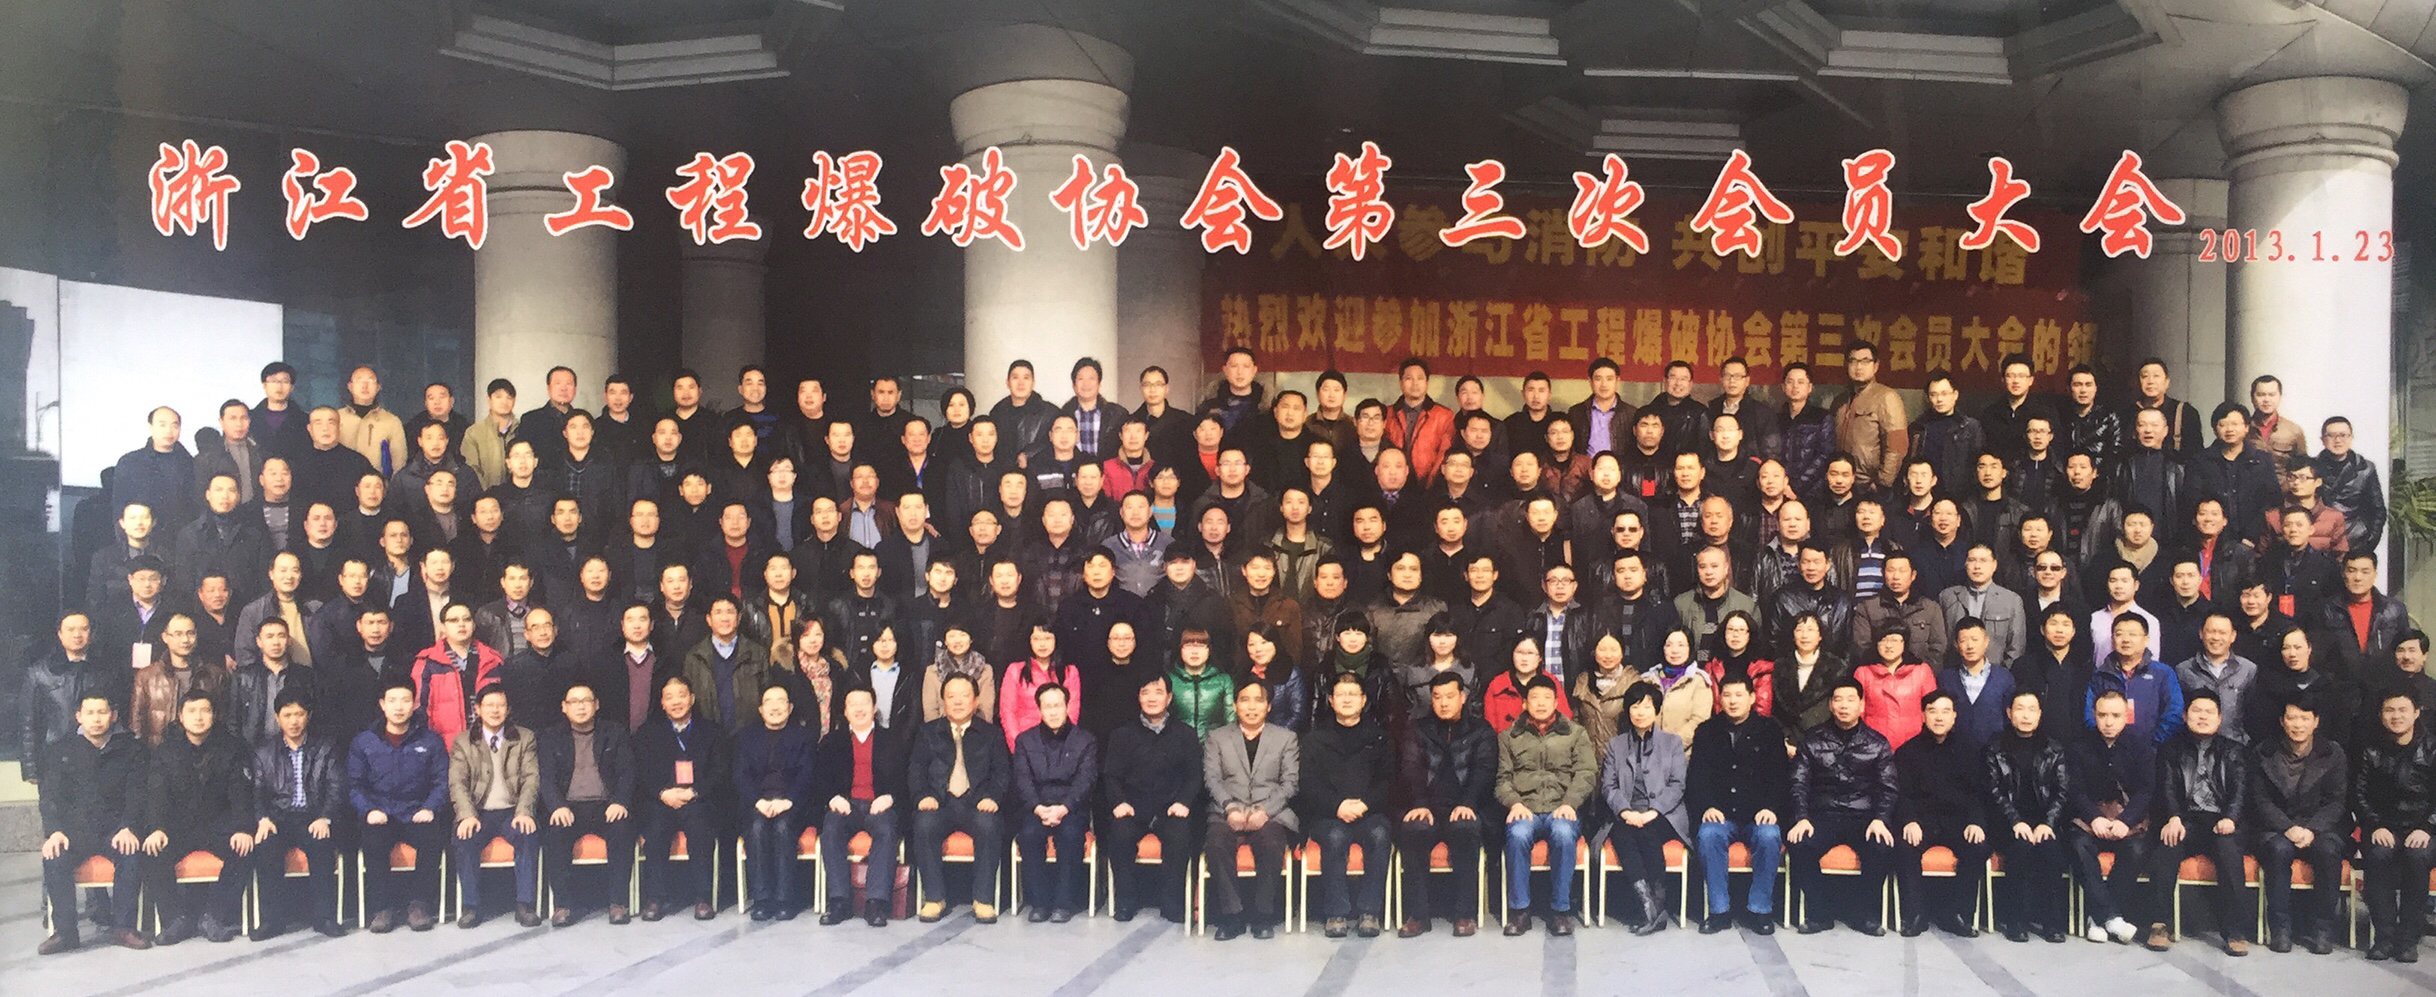 2013年1月23日浙江省工程爆破协会第三次会员大会